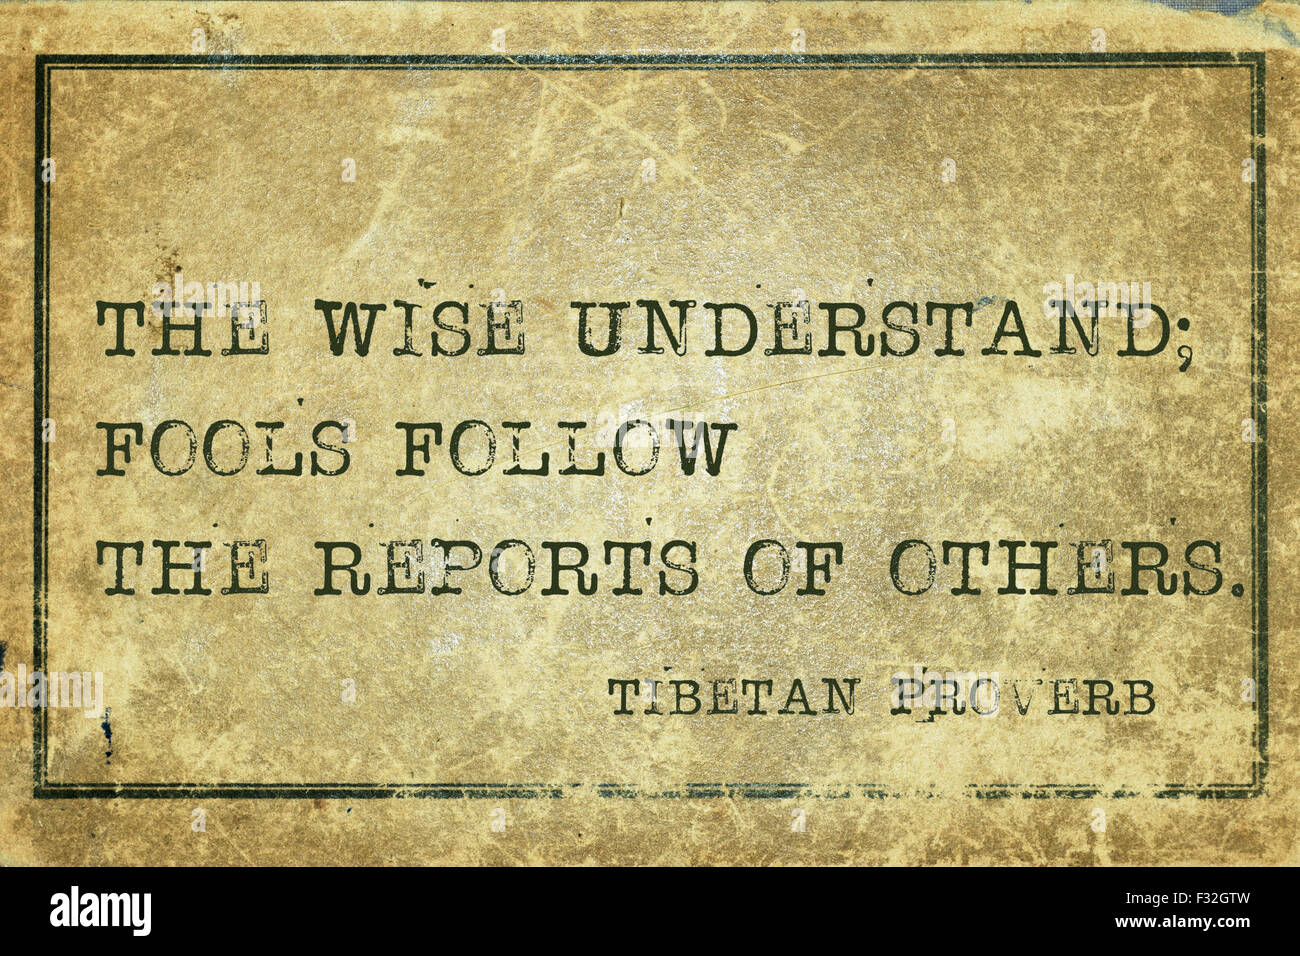 Les Sages Fous ; comprendre les rapports de suivi - proverbe tibétain ancien imprimé sur carton vintage grunge Banque D'Images